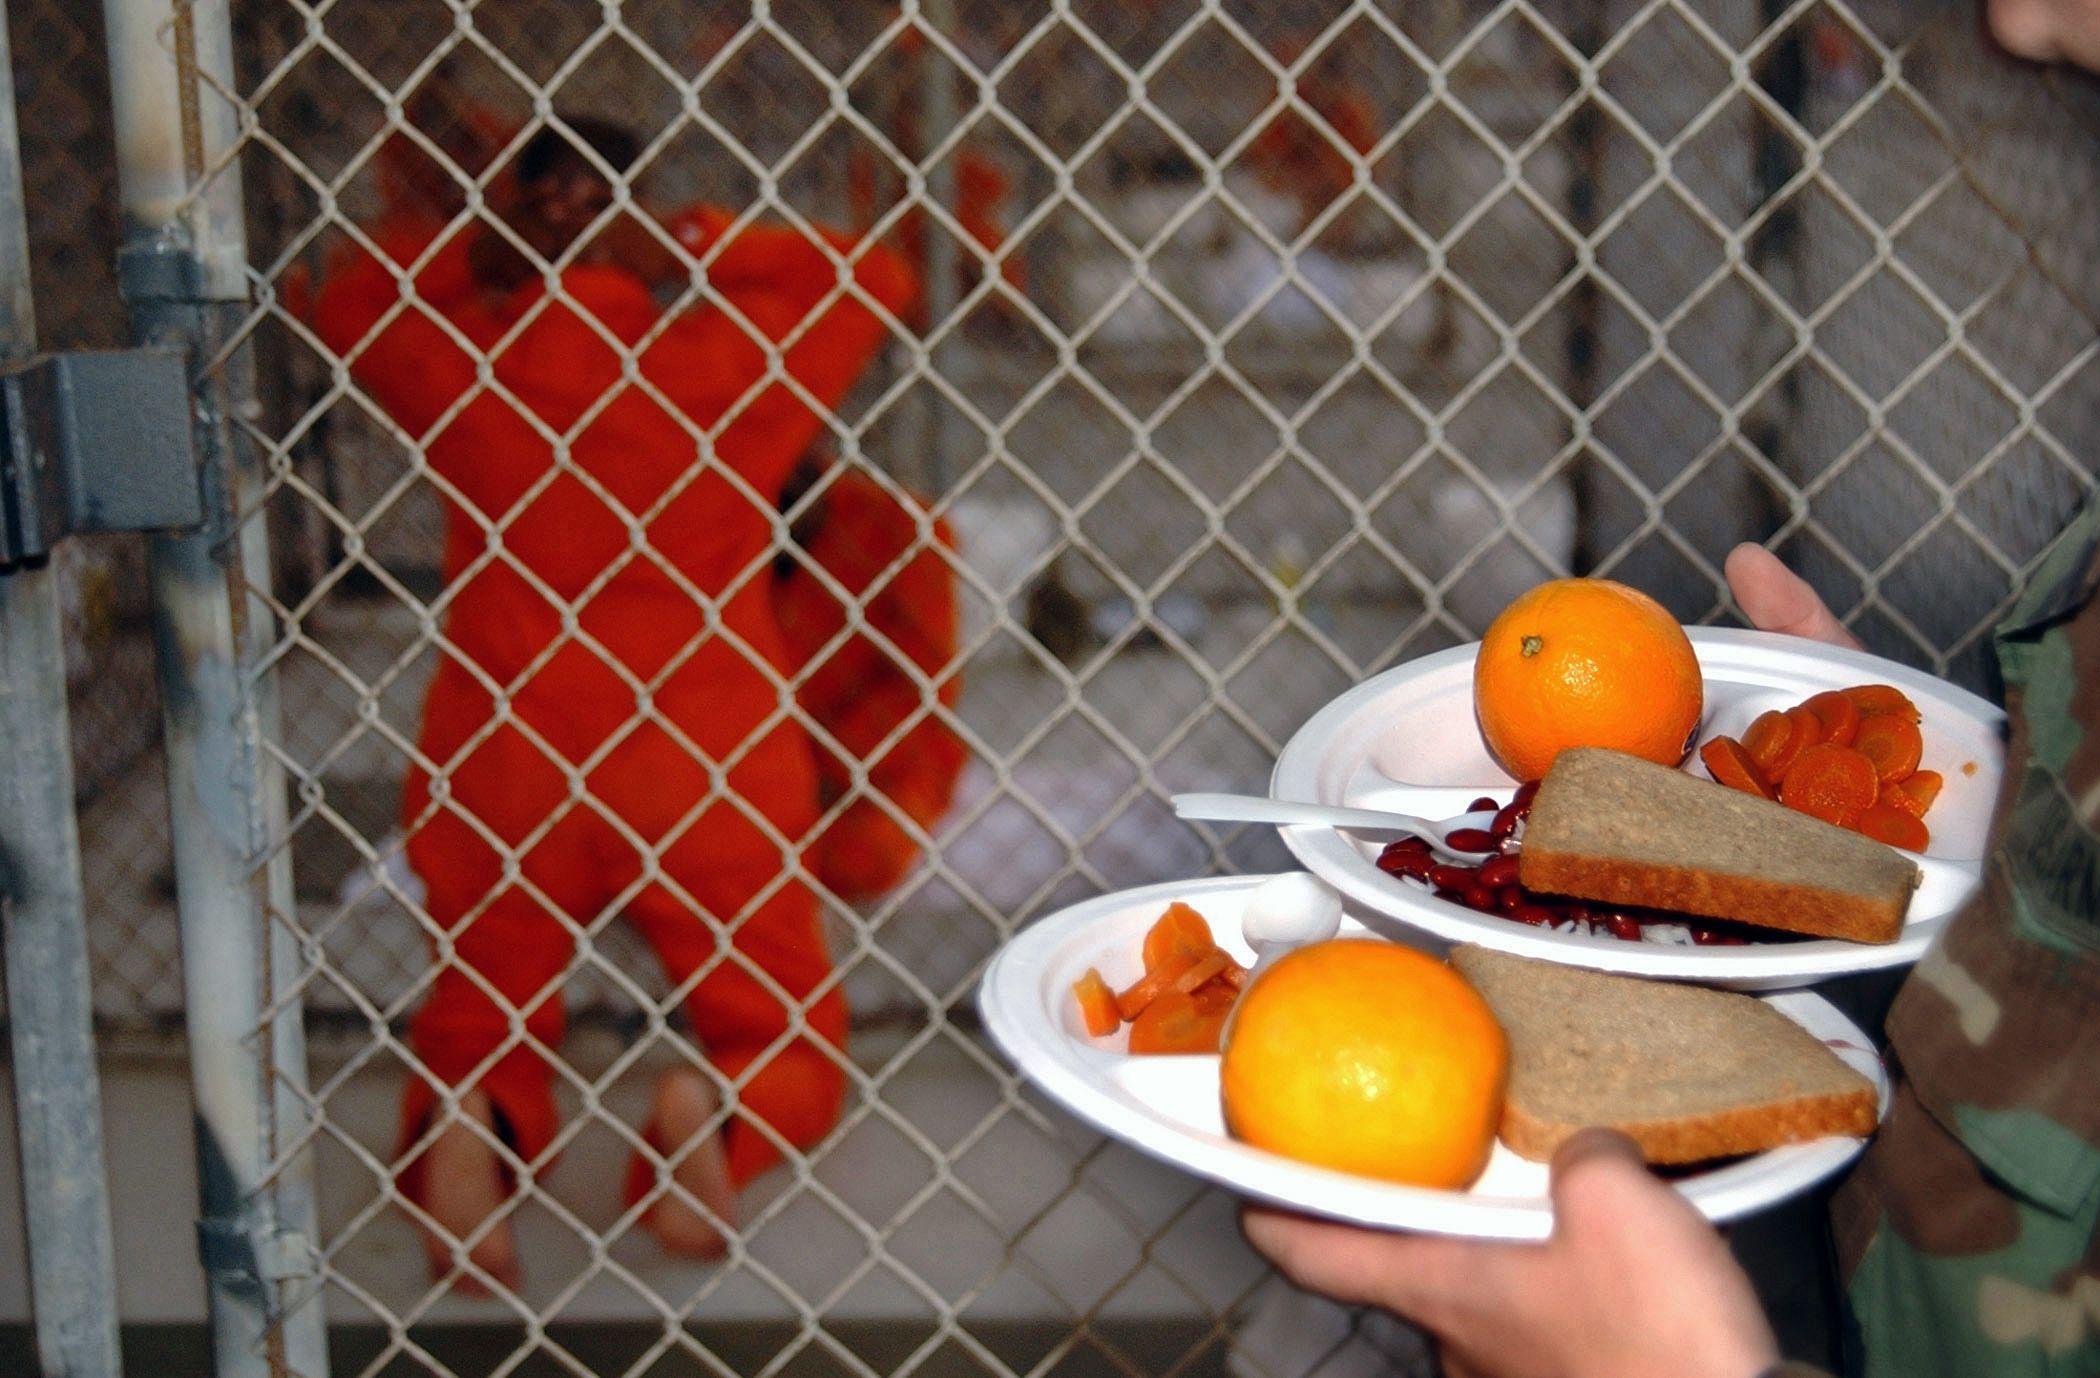 Un prisionero arrodillado espera a que le entreguen la comida.